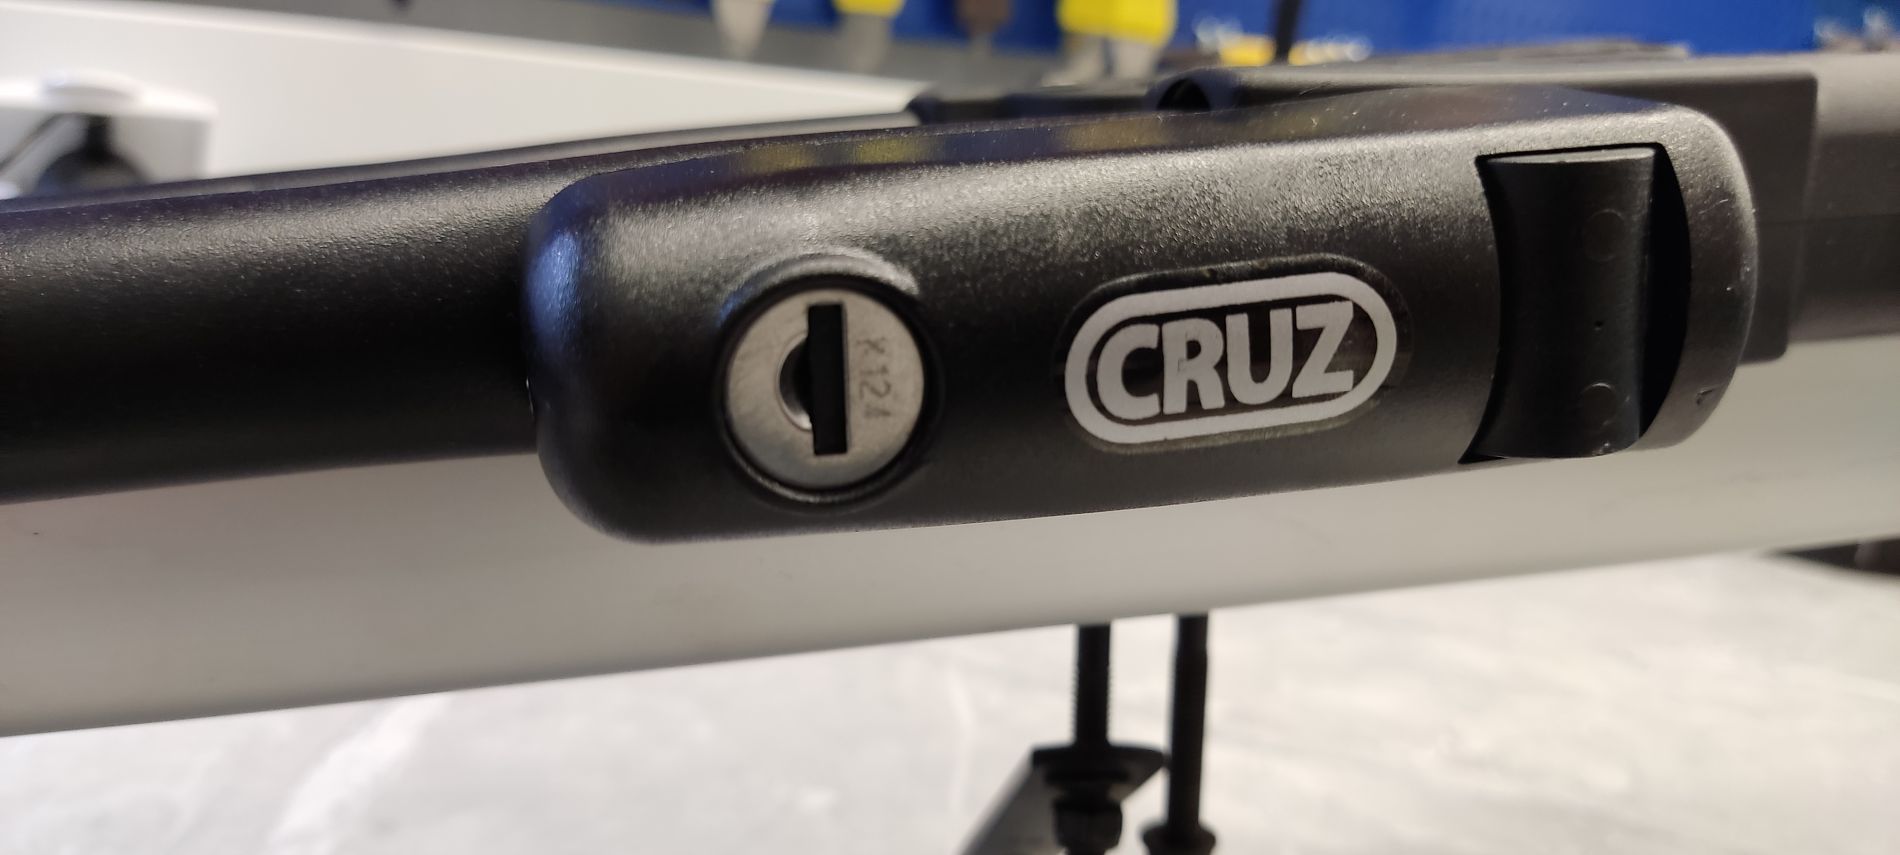 Dorobienie klucza do zamka uchwytu rowerowego firmy Cruz